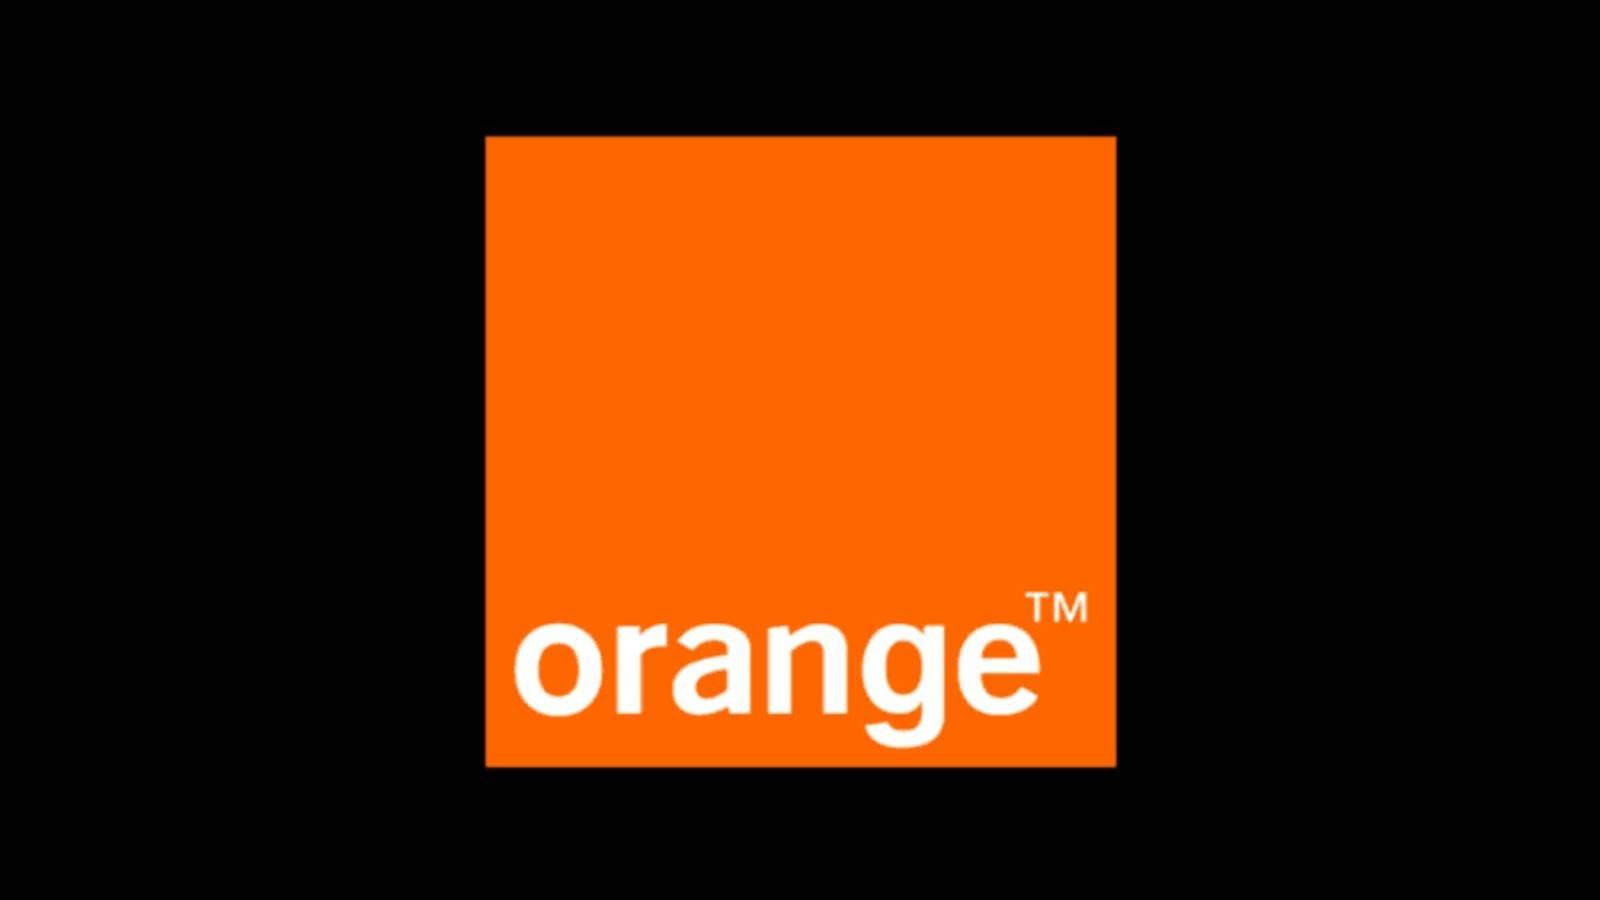 Orange te regala vales de vacaciones por 1.000 euros Términos y condiciones